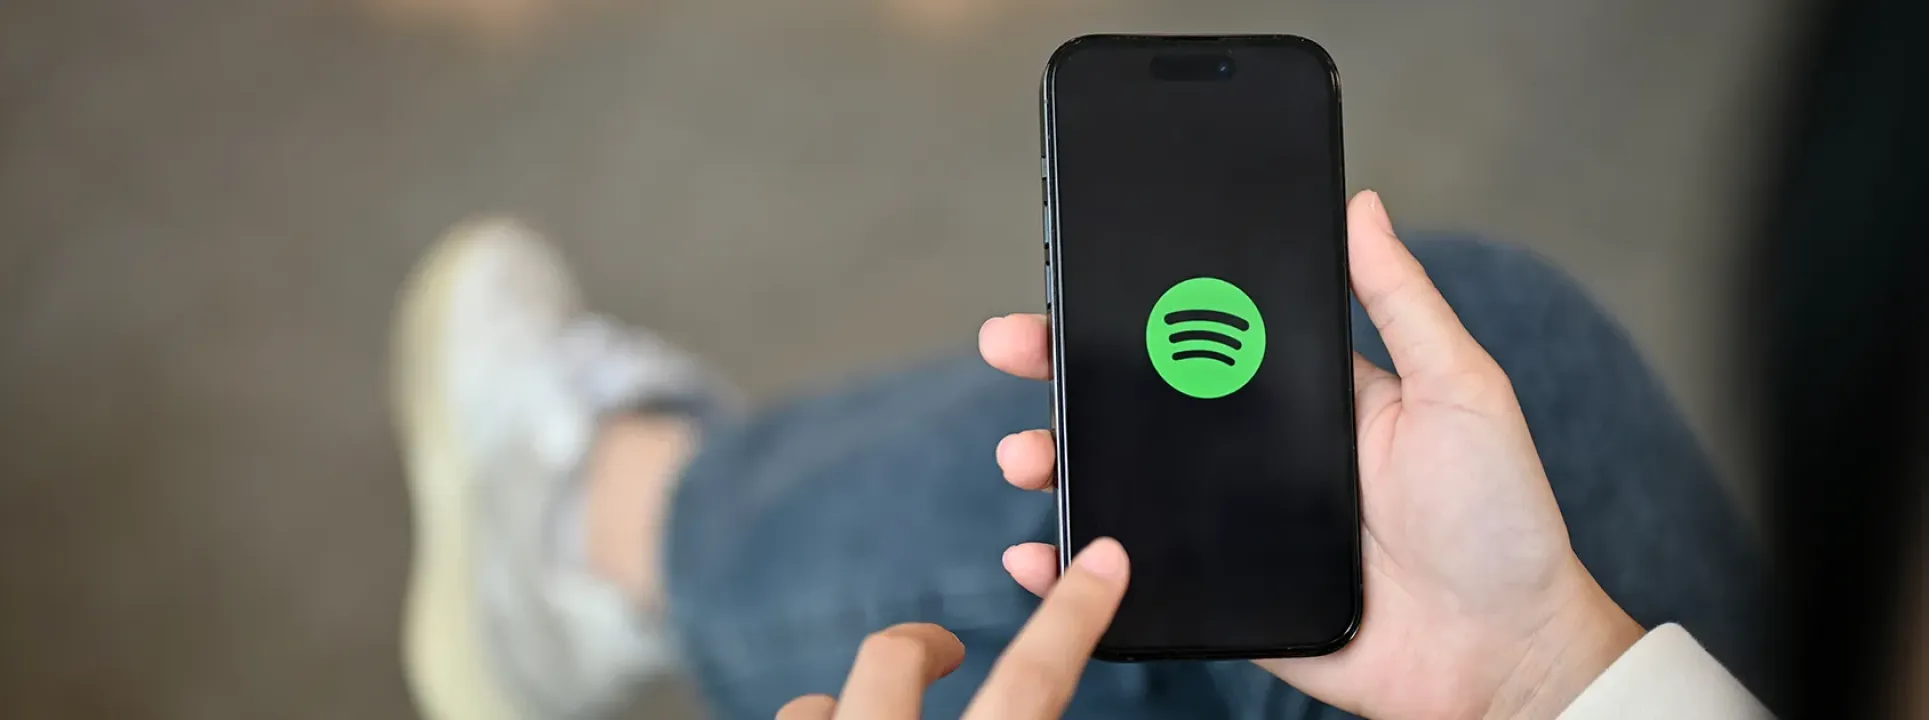 6 alternatives à Spotify pour écouter votre musique  blog post